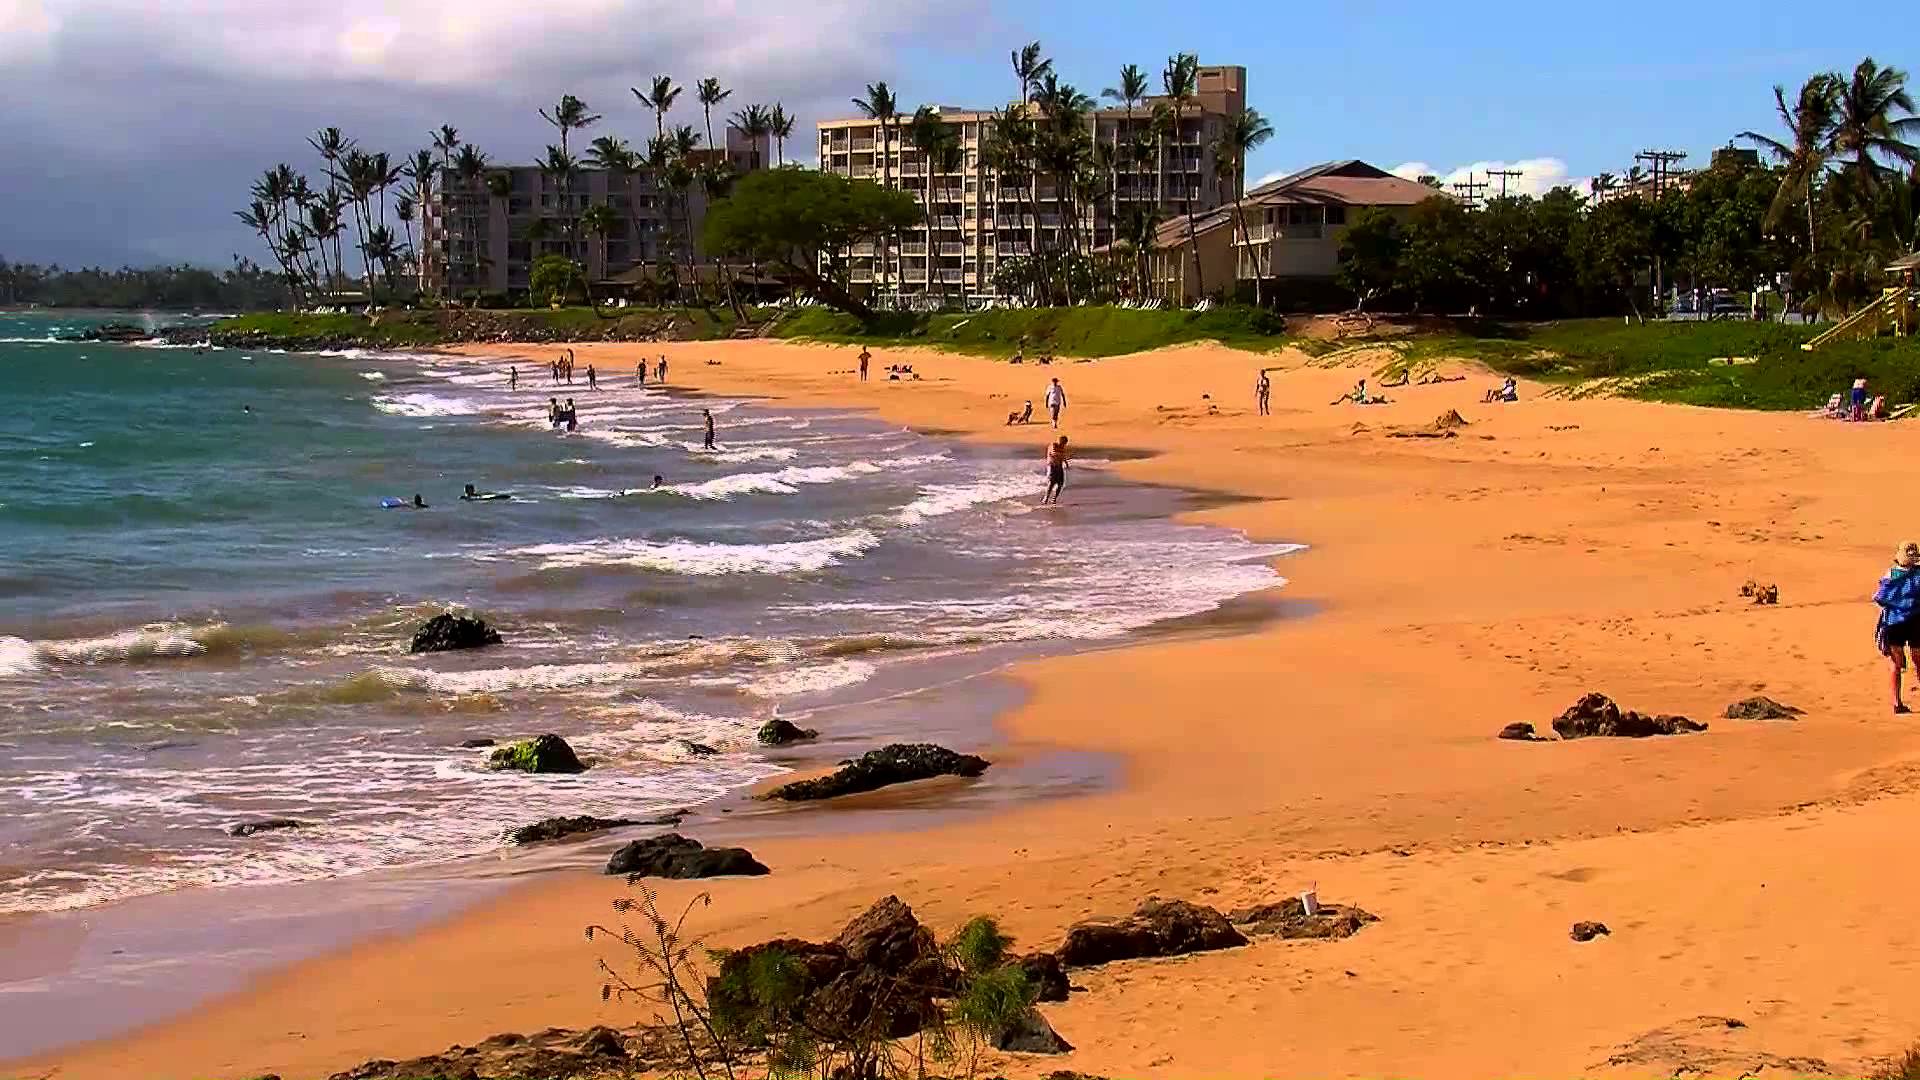 Kamaole Beach Park I, II, III, Maui - Super Beaches Hawaii - YouTube